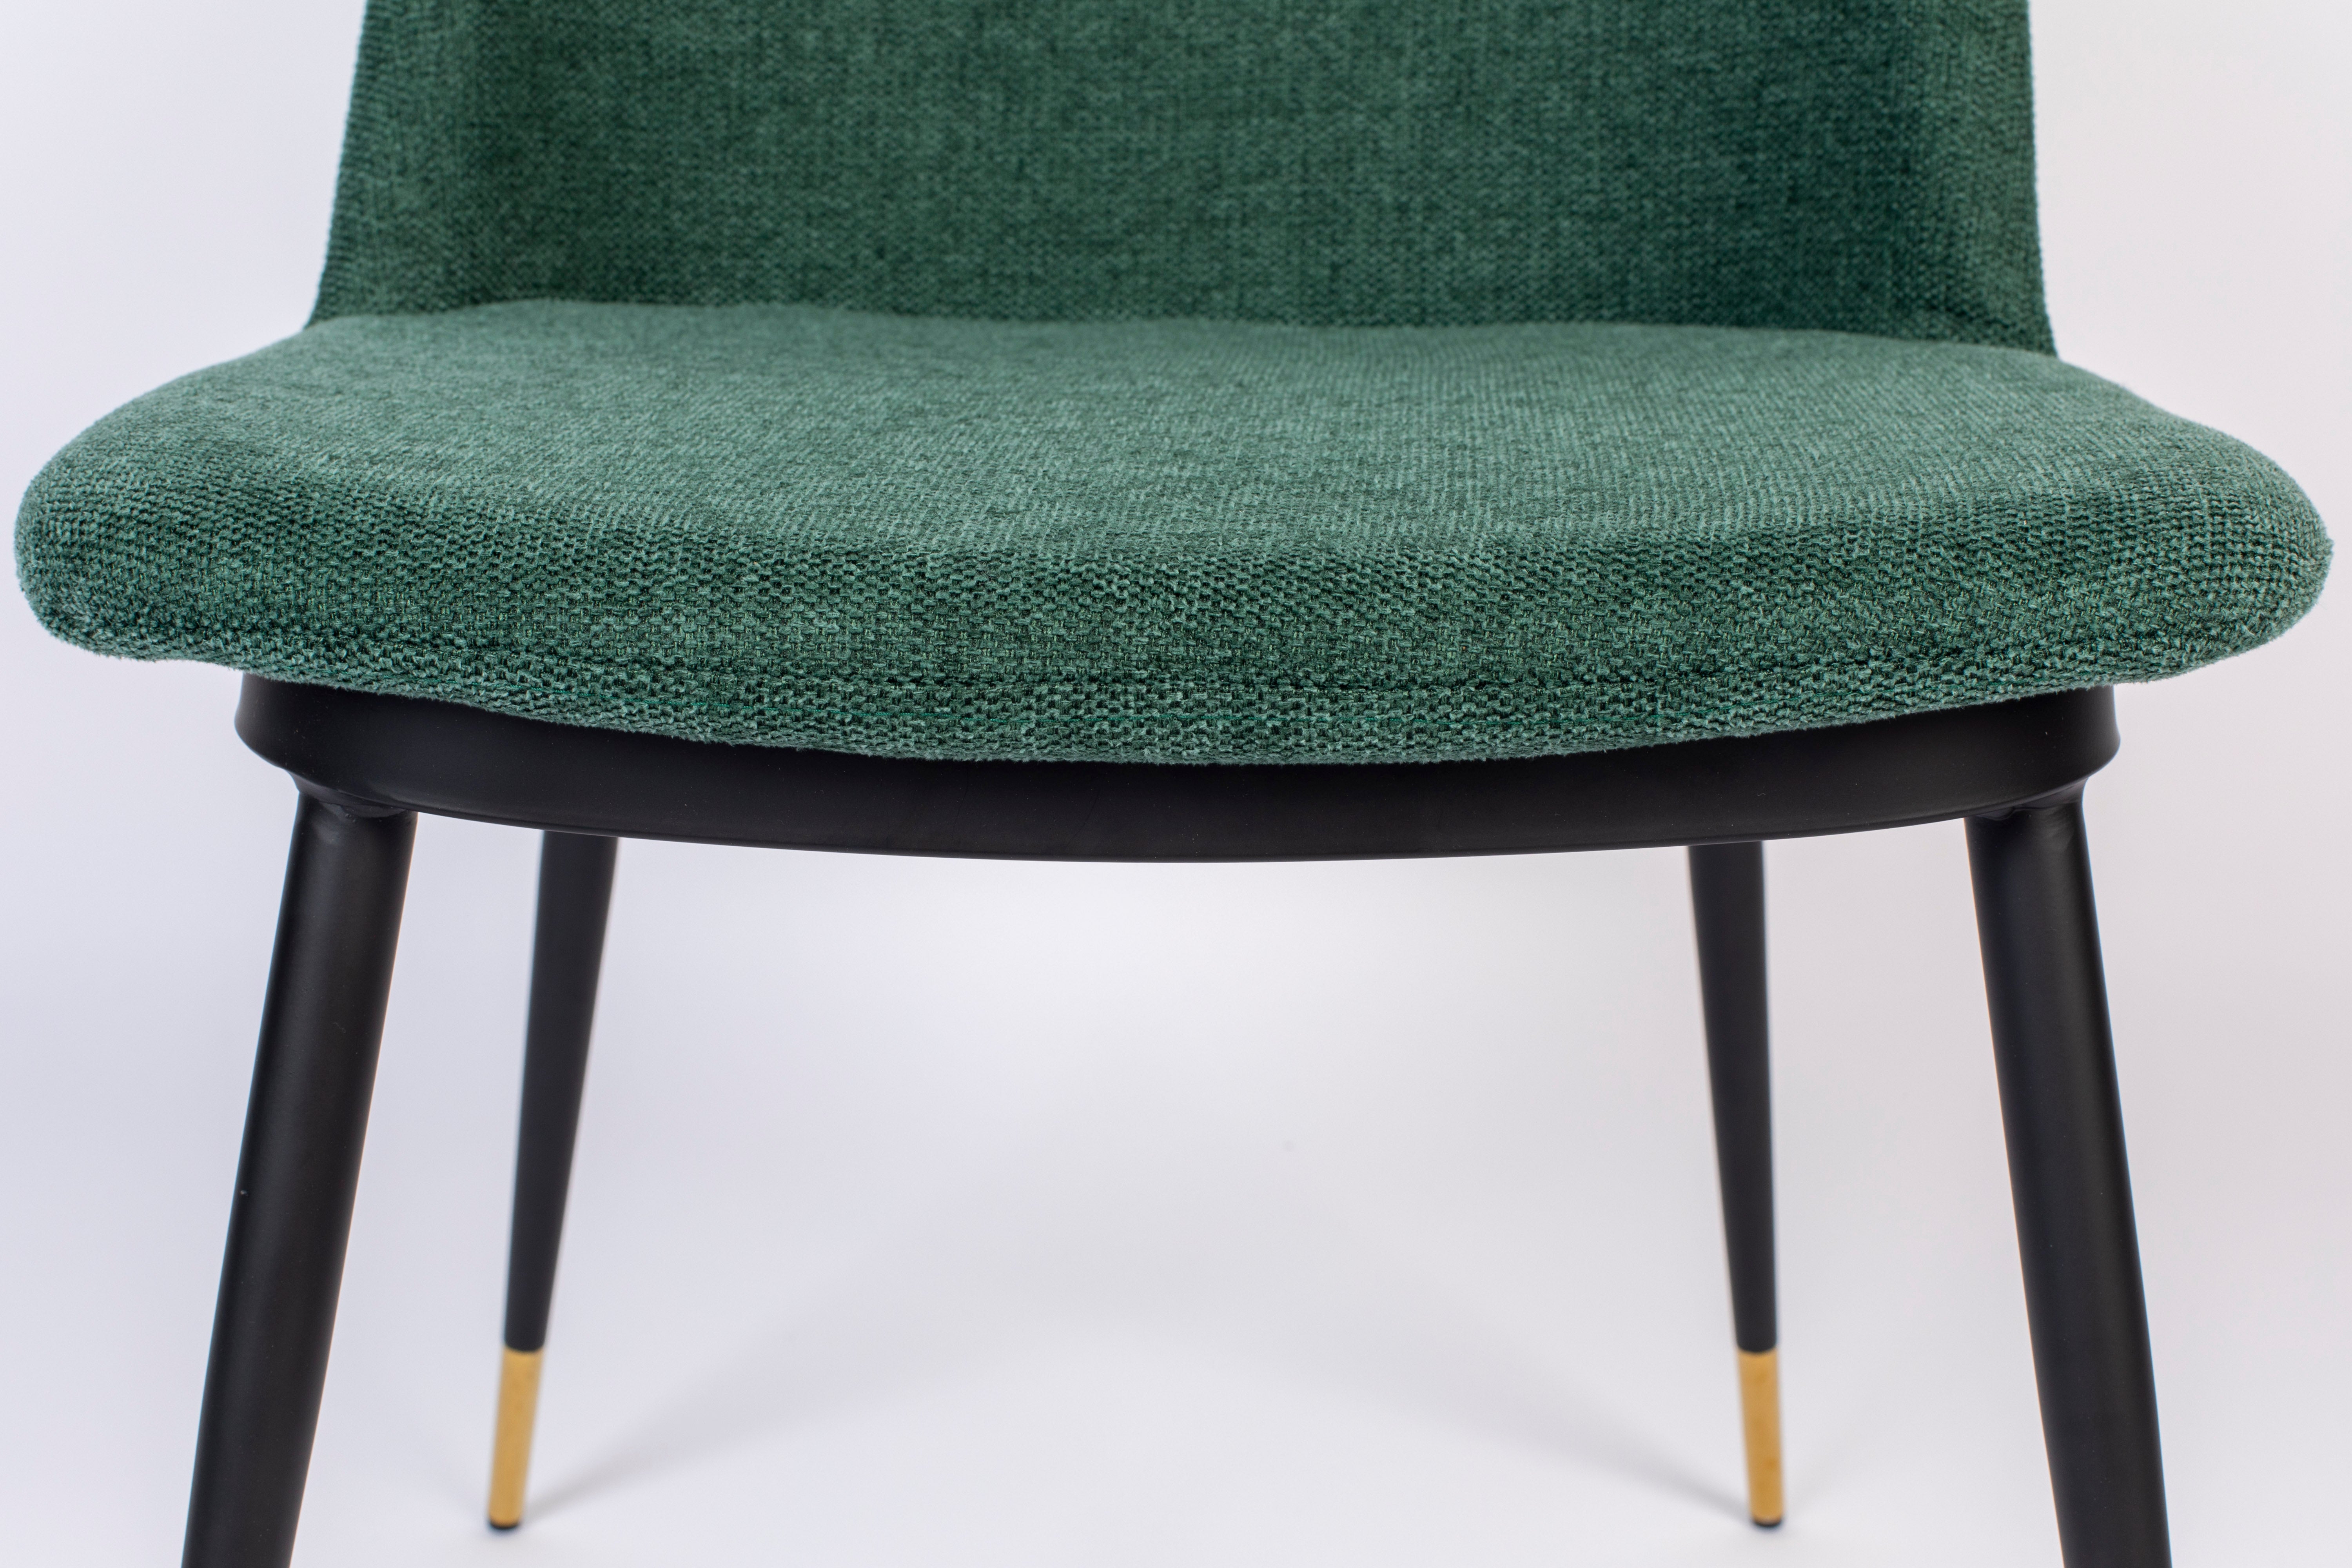 Chair lionel dark green | 2 pieces